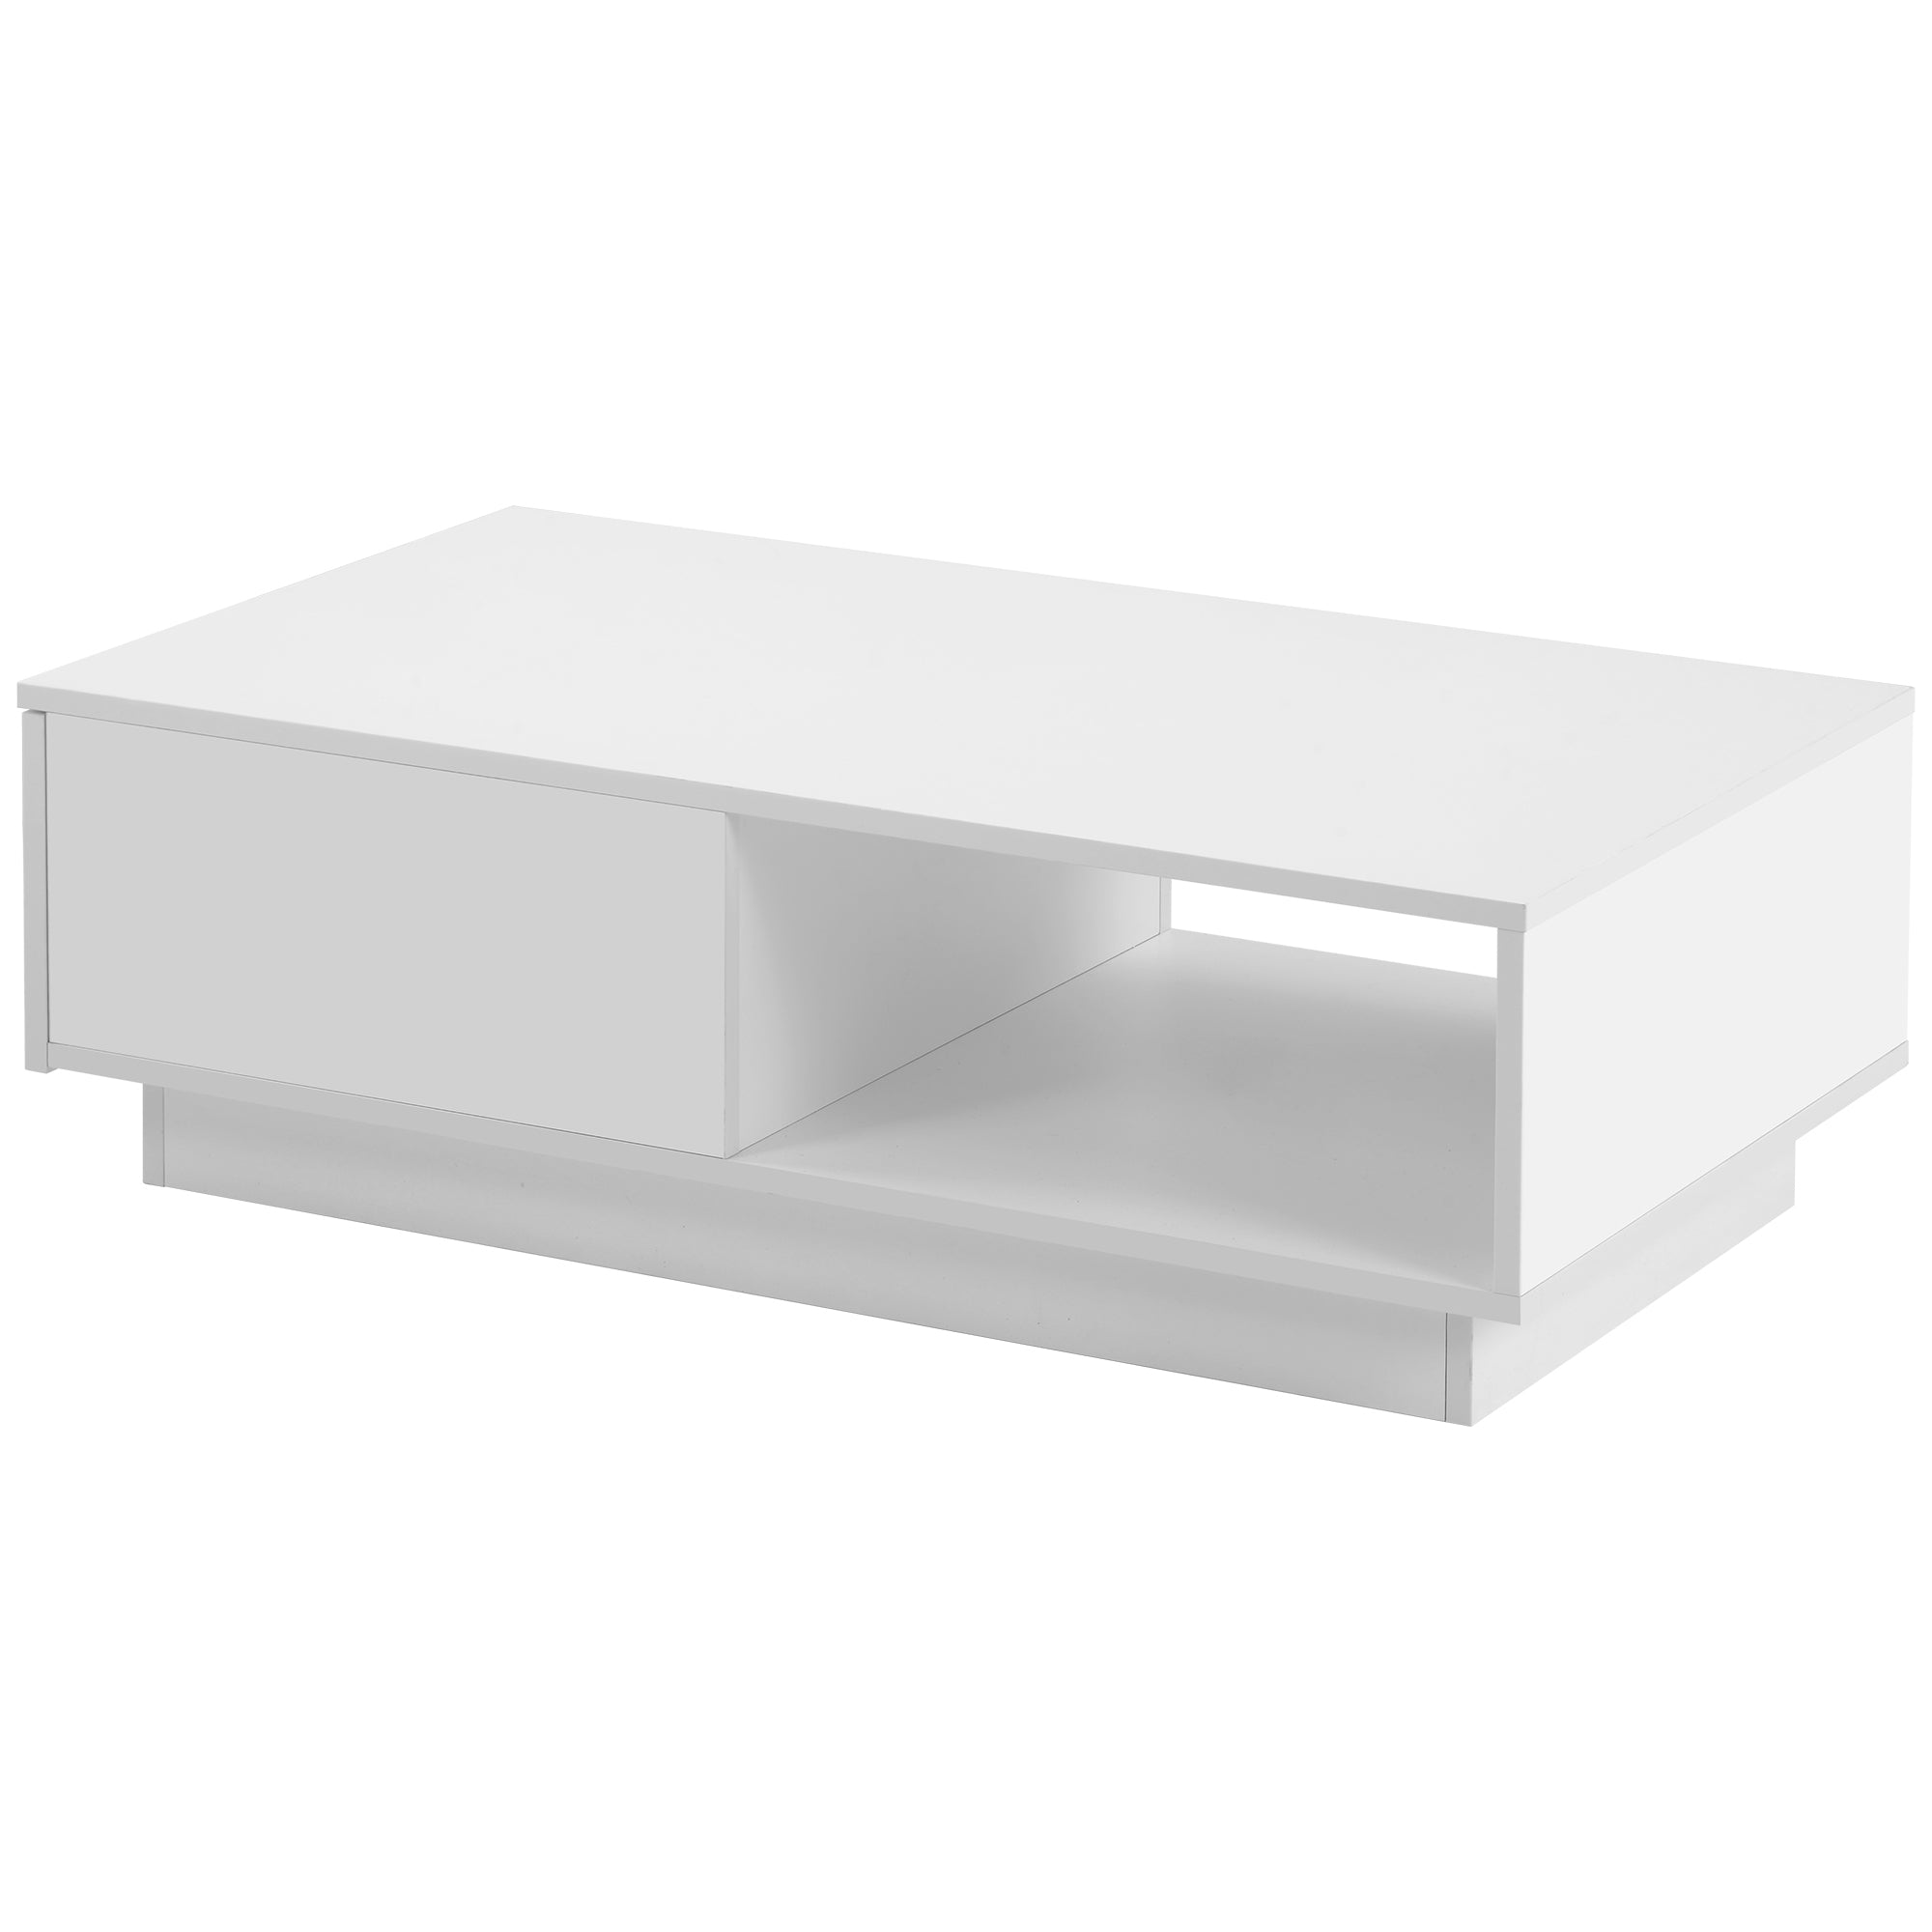 Couchtisch, moderner Hochglanz-Sofatisch, Couchtisch, rechteckiger weißer Wohnzimmertisch mit LED-Licht, 15 Farben für Teetisch, Haushaltsdekoration (99 x 55 x 32 cm)